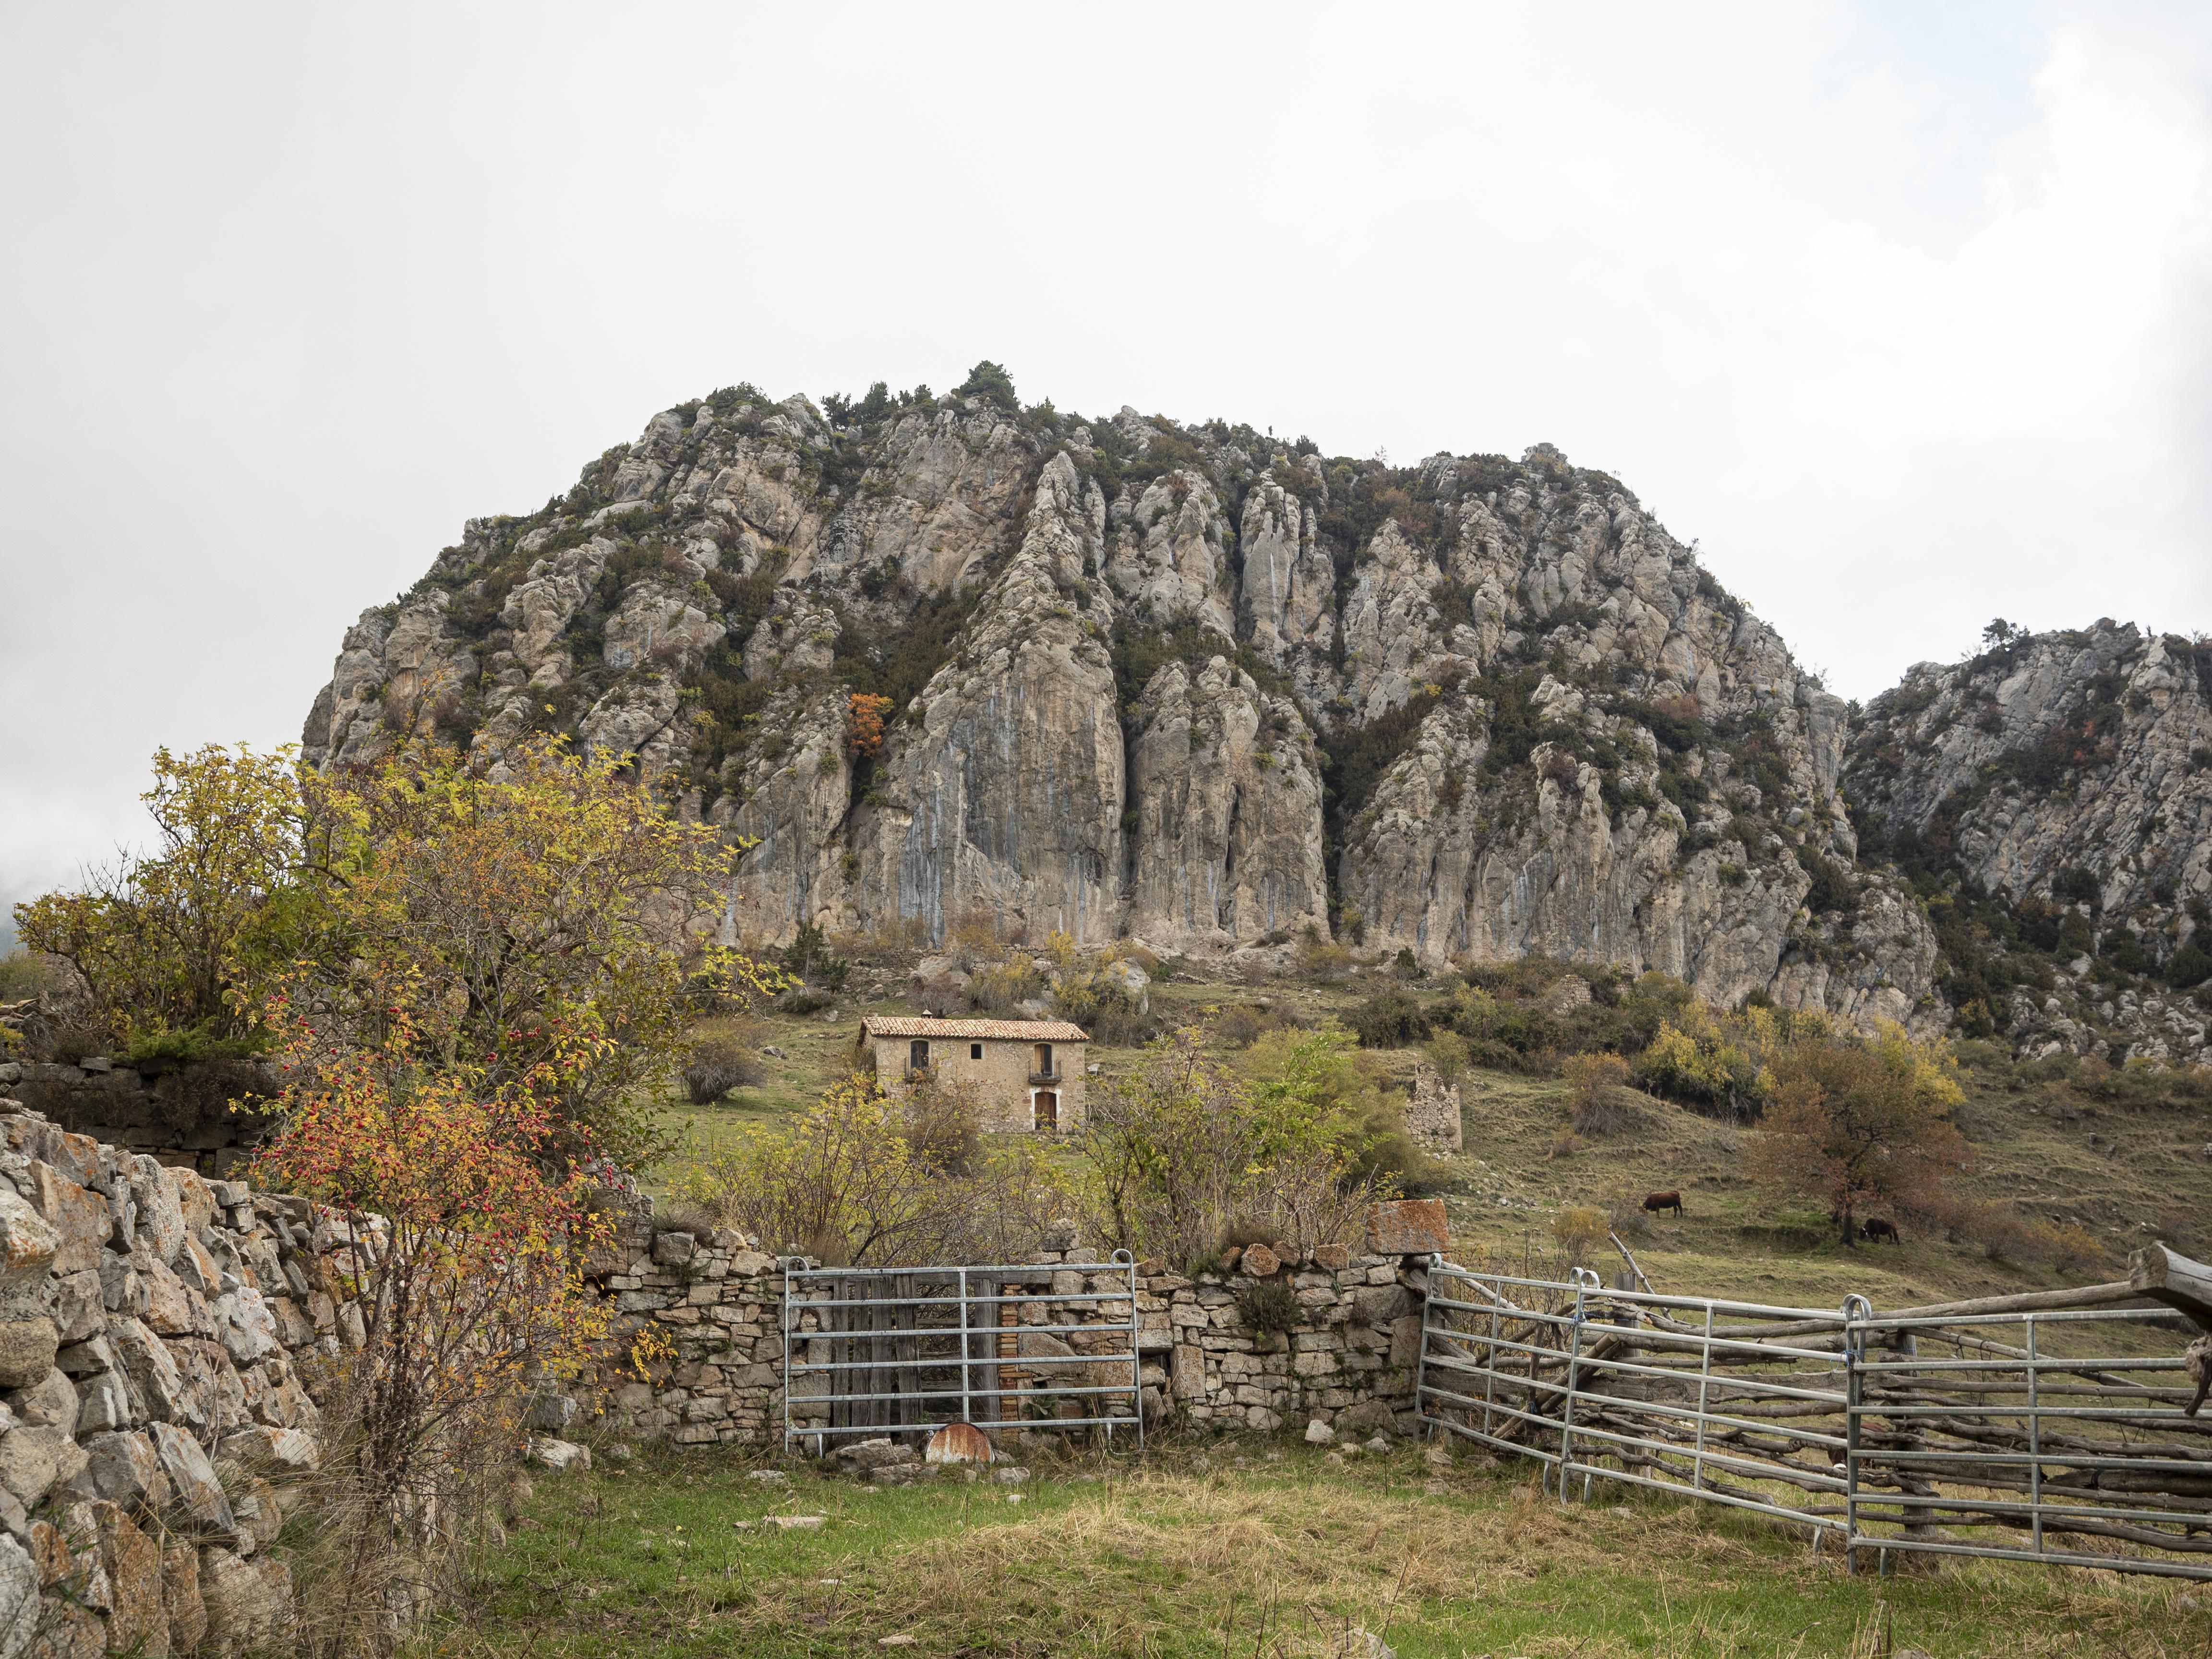 L'imponent Roc de Peguera, sobre el qual s'alçava el Castell de Peguera fa molts segles. FOTO: Anna E. Puig